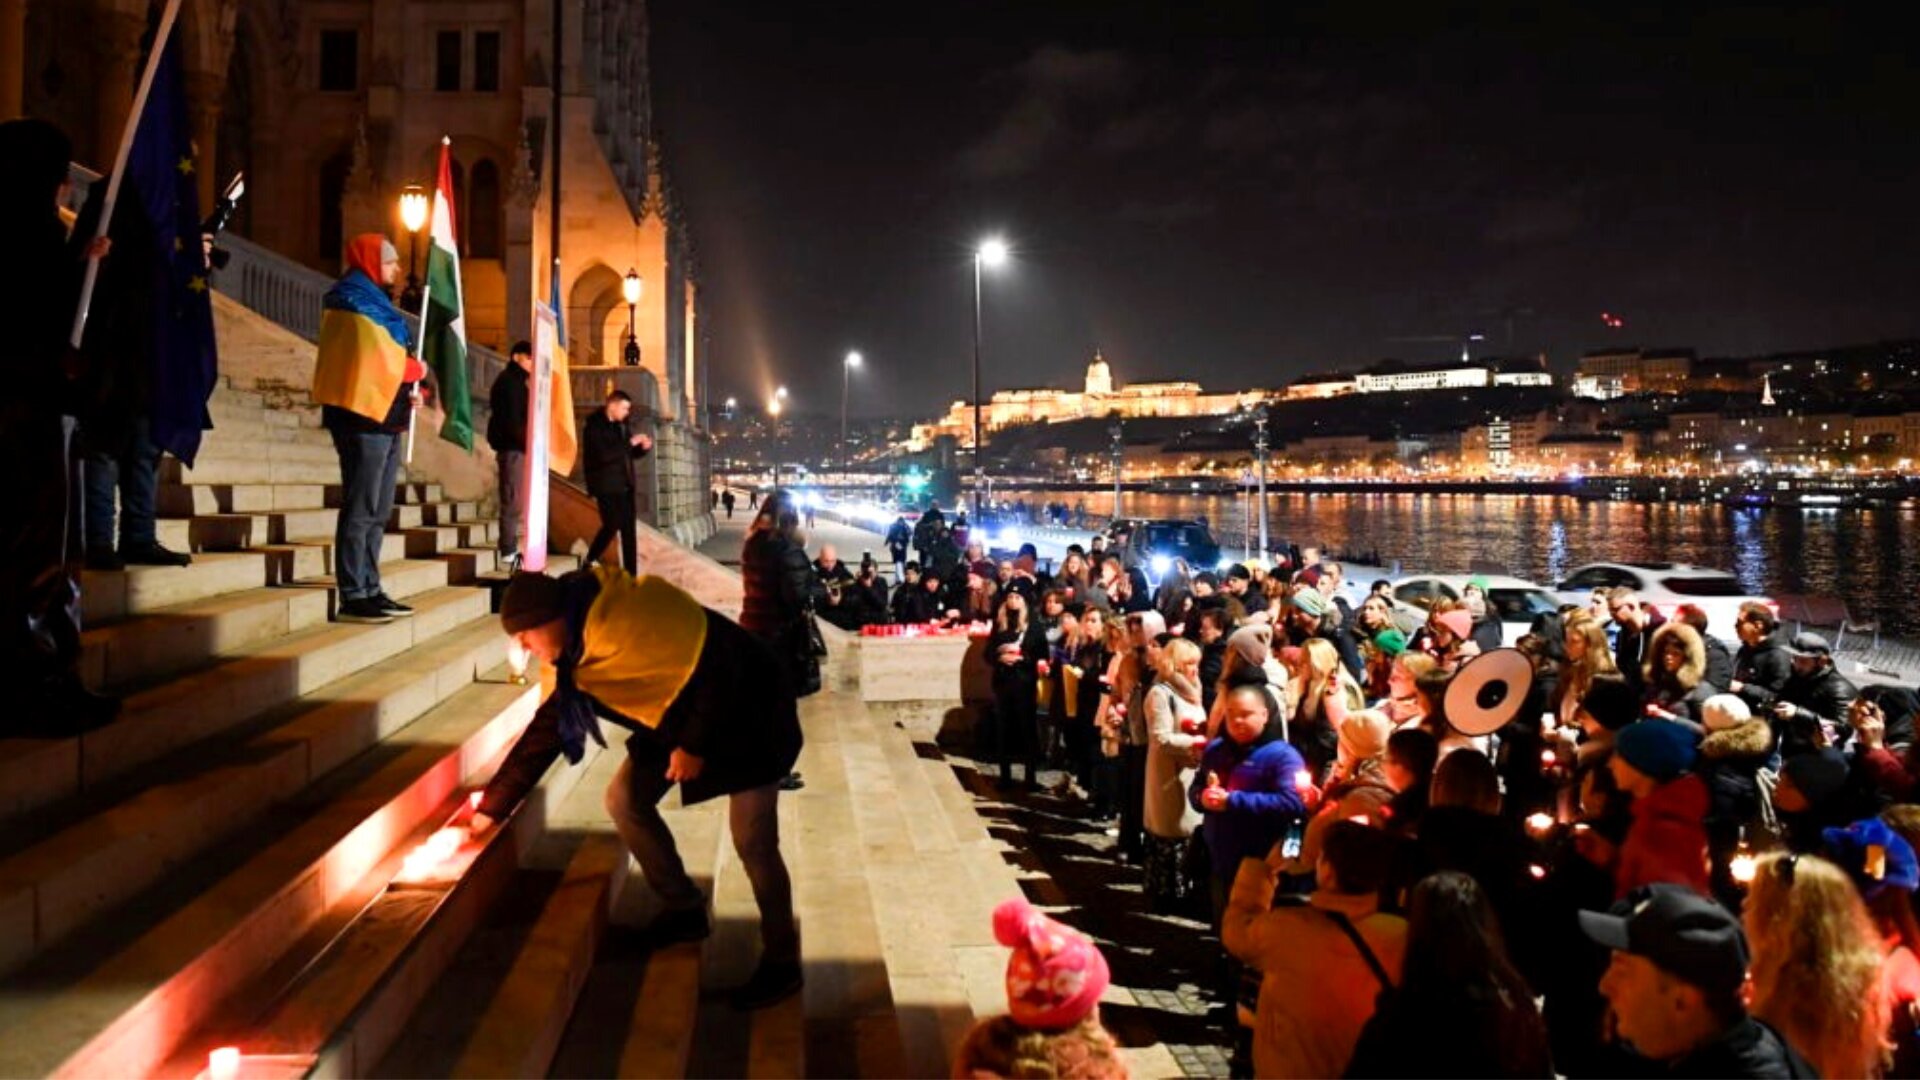 У суботу, 26 листопада, ввечері на будівлі Парламенту Угорщини на годину вимкнули зовнішню ілюмінацію в рамках вшанування пам’яті жертв Голодомору в Україні. 

